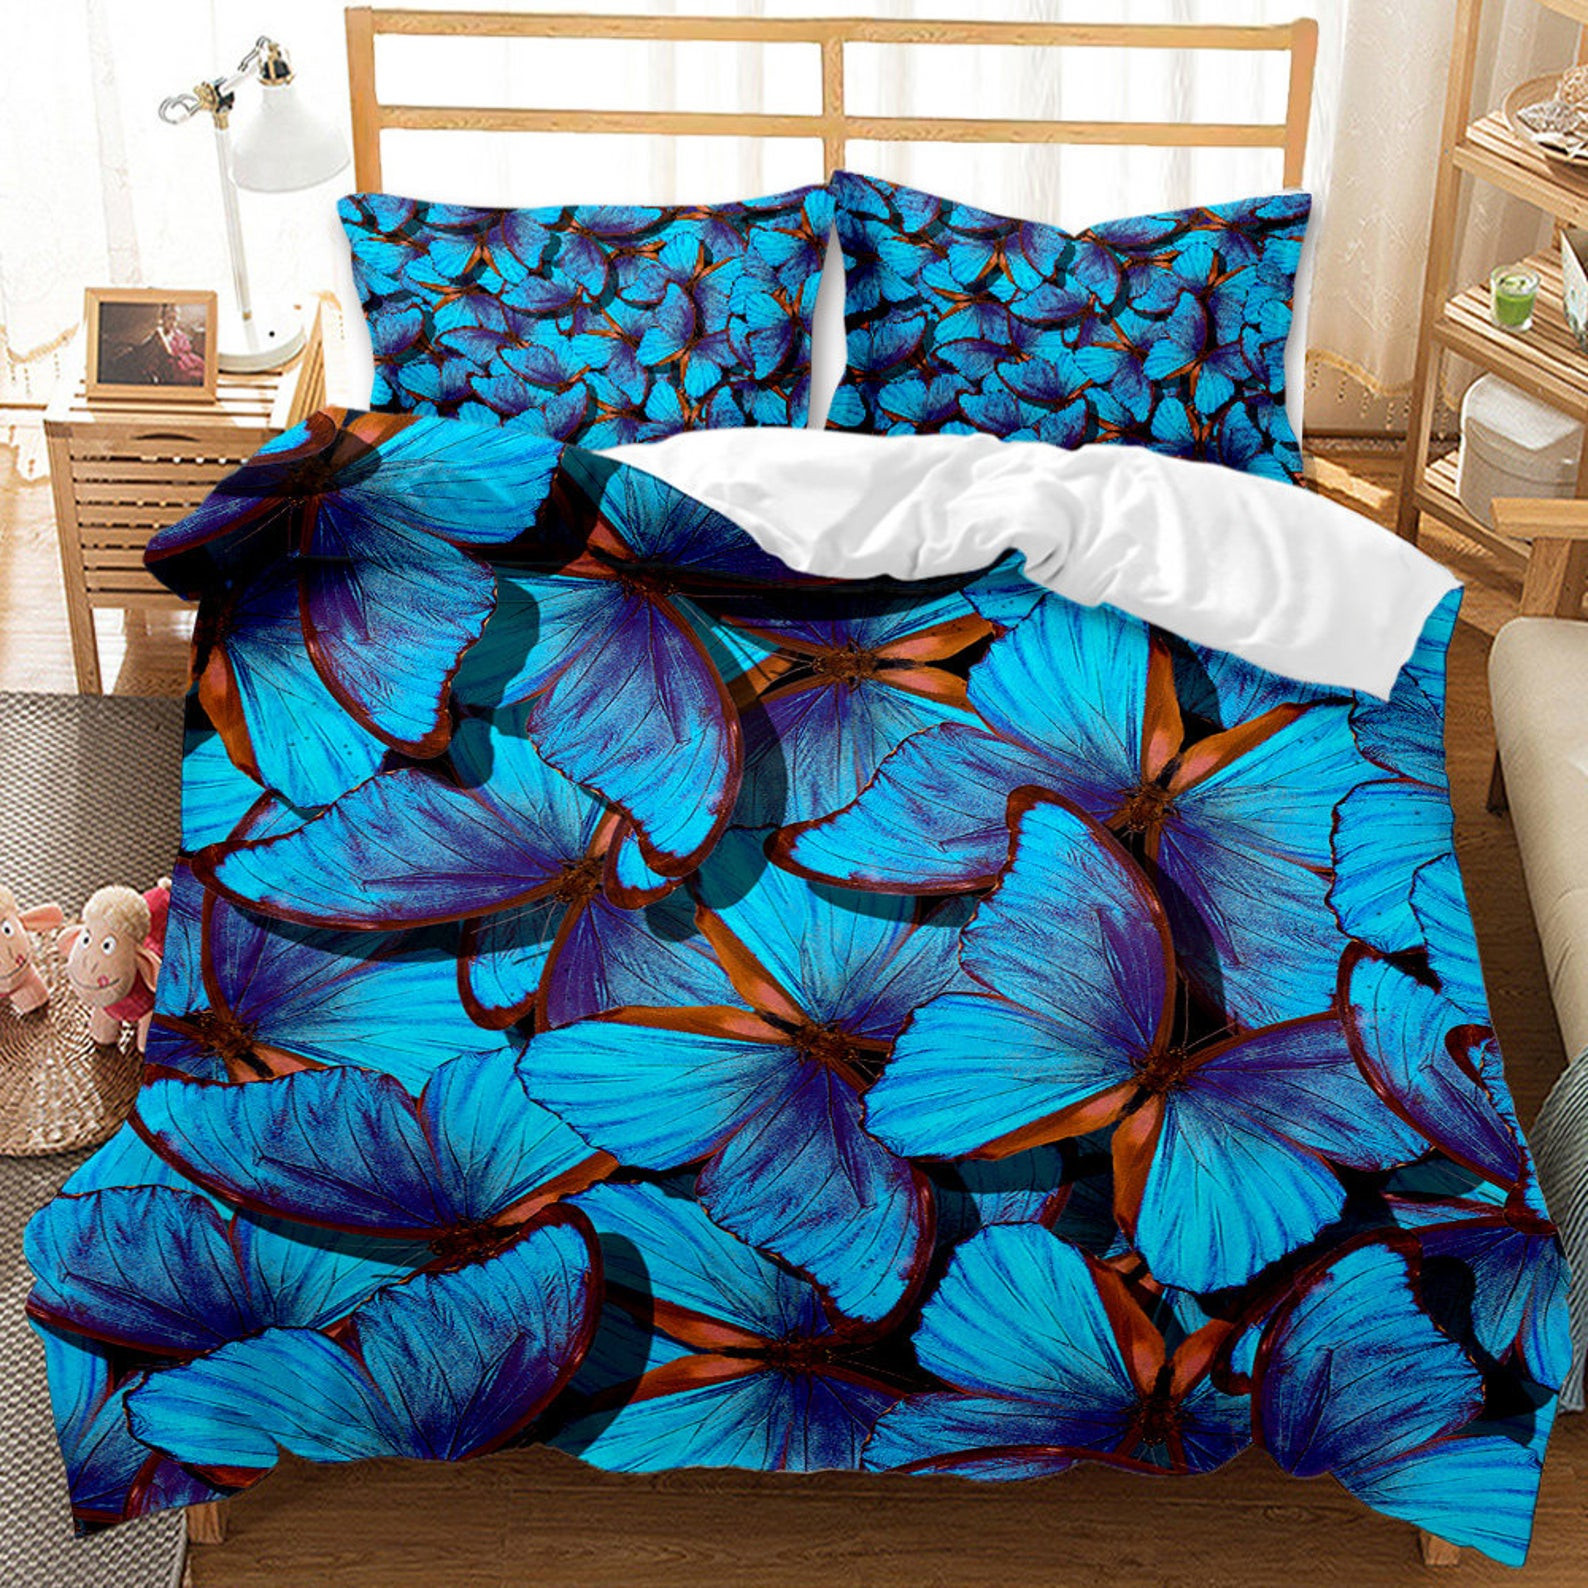 blue butterfly bed sheets duvet cover bedding sets 6u8jg